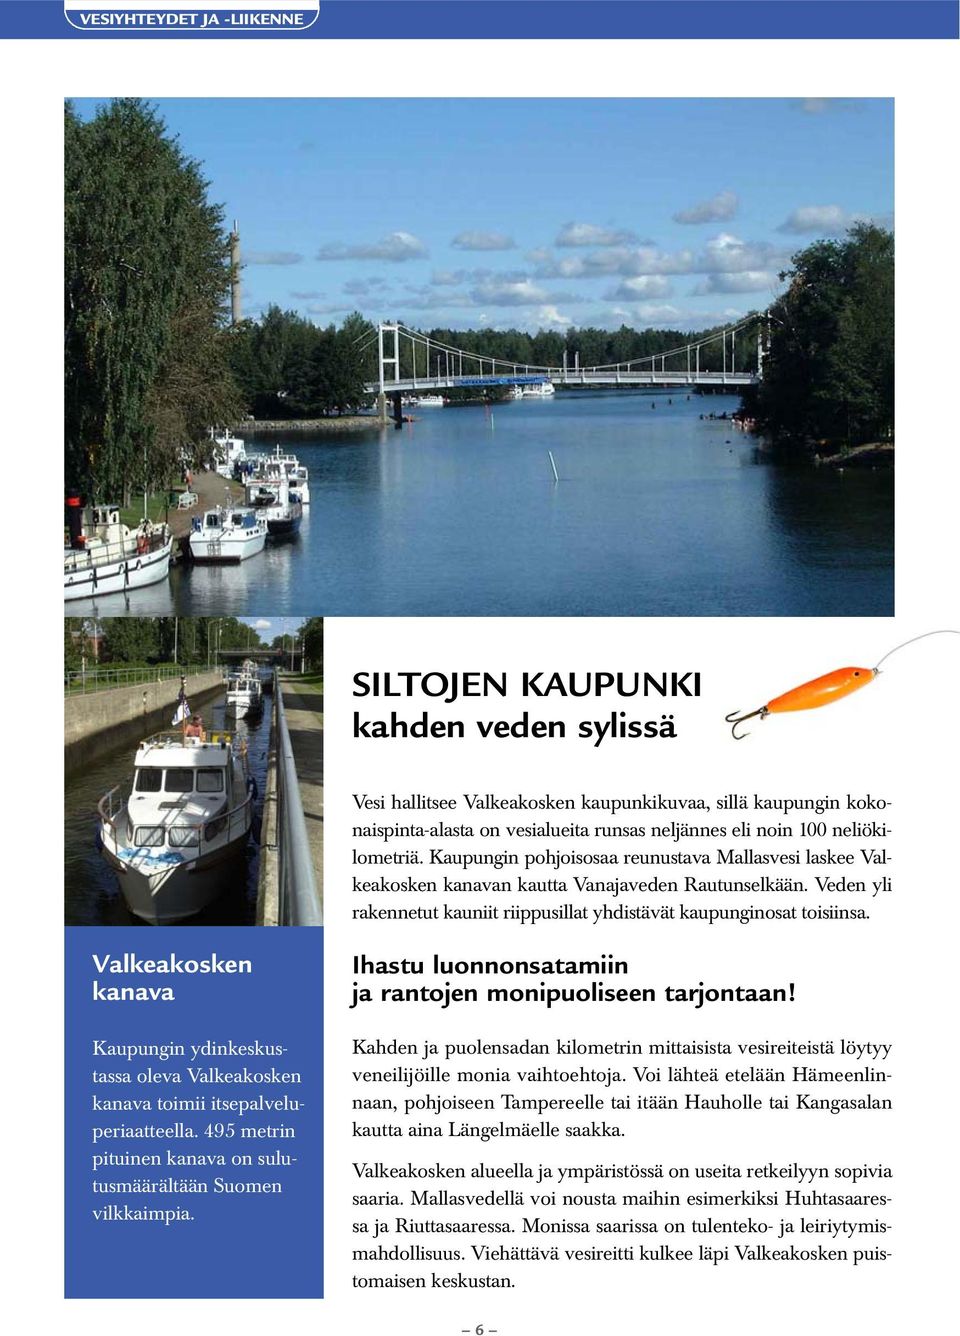 Valkeakosken kanava Kaupungin ydinkeskustassa oleva Valkeakosken kanava toimii itsepalveluperiaatteella. 495 metrin pituinen kanava on sulutusmäärältään Suomen vilkkaimpia.